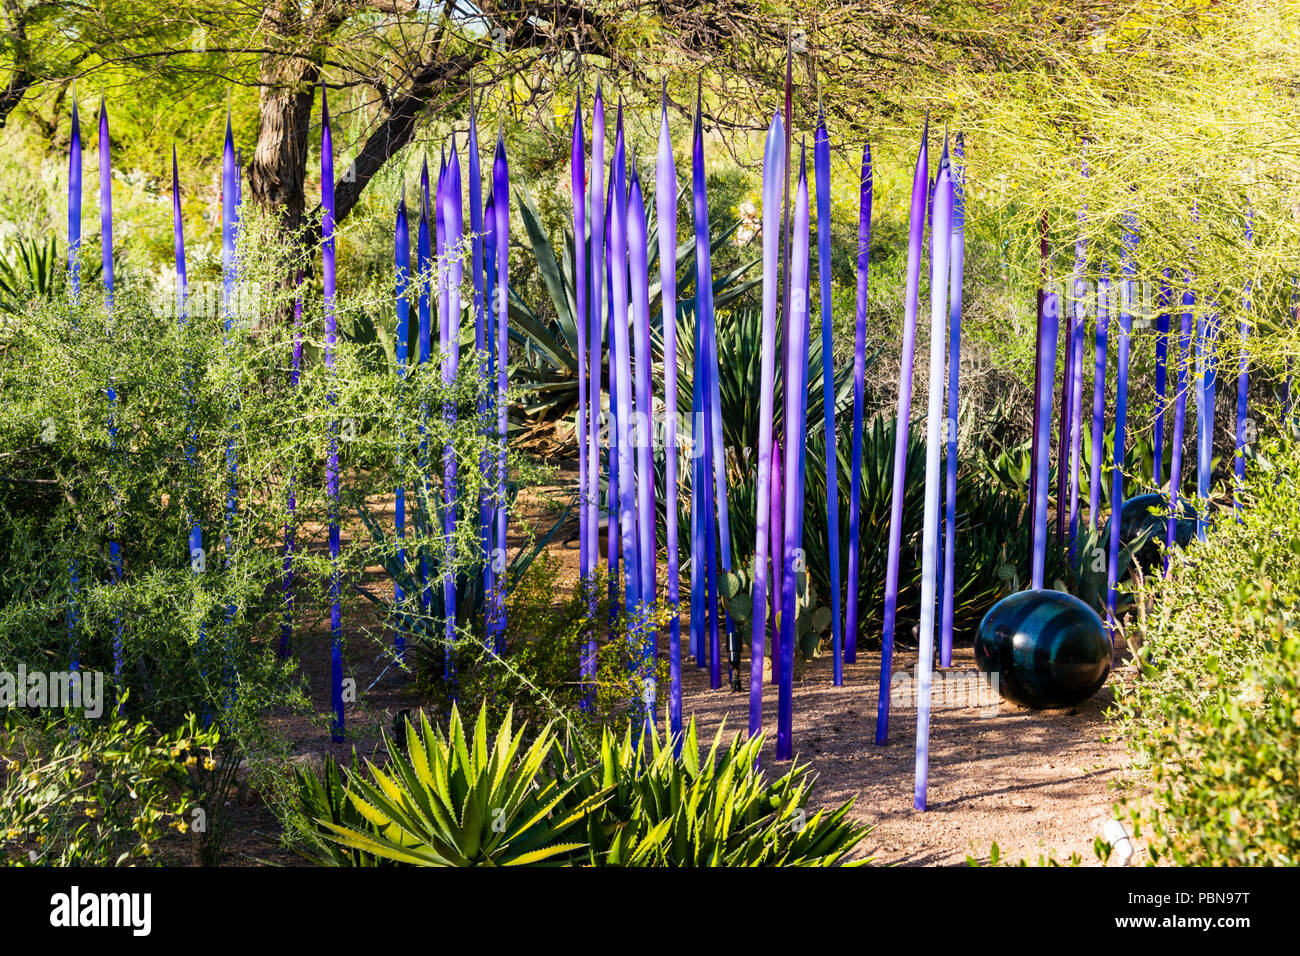 Chihuly Neodymium Reeds at Desert Botanical Garden, Phoenix Stock Photo